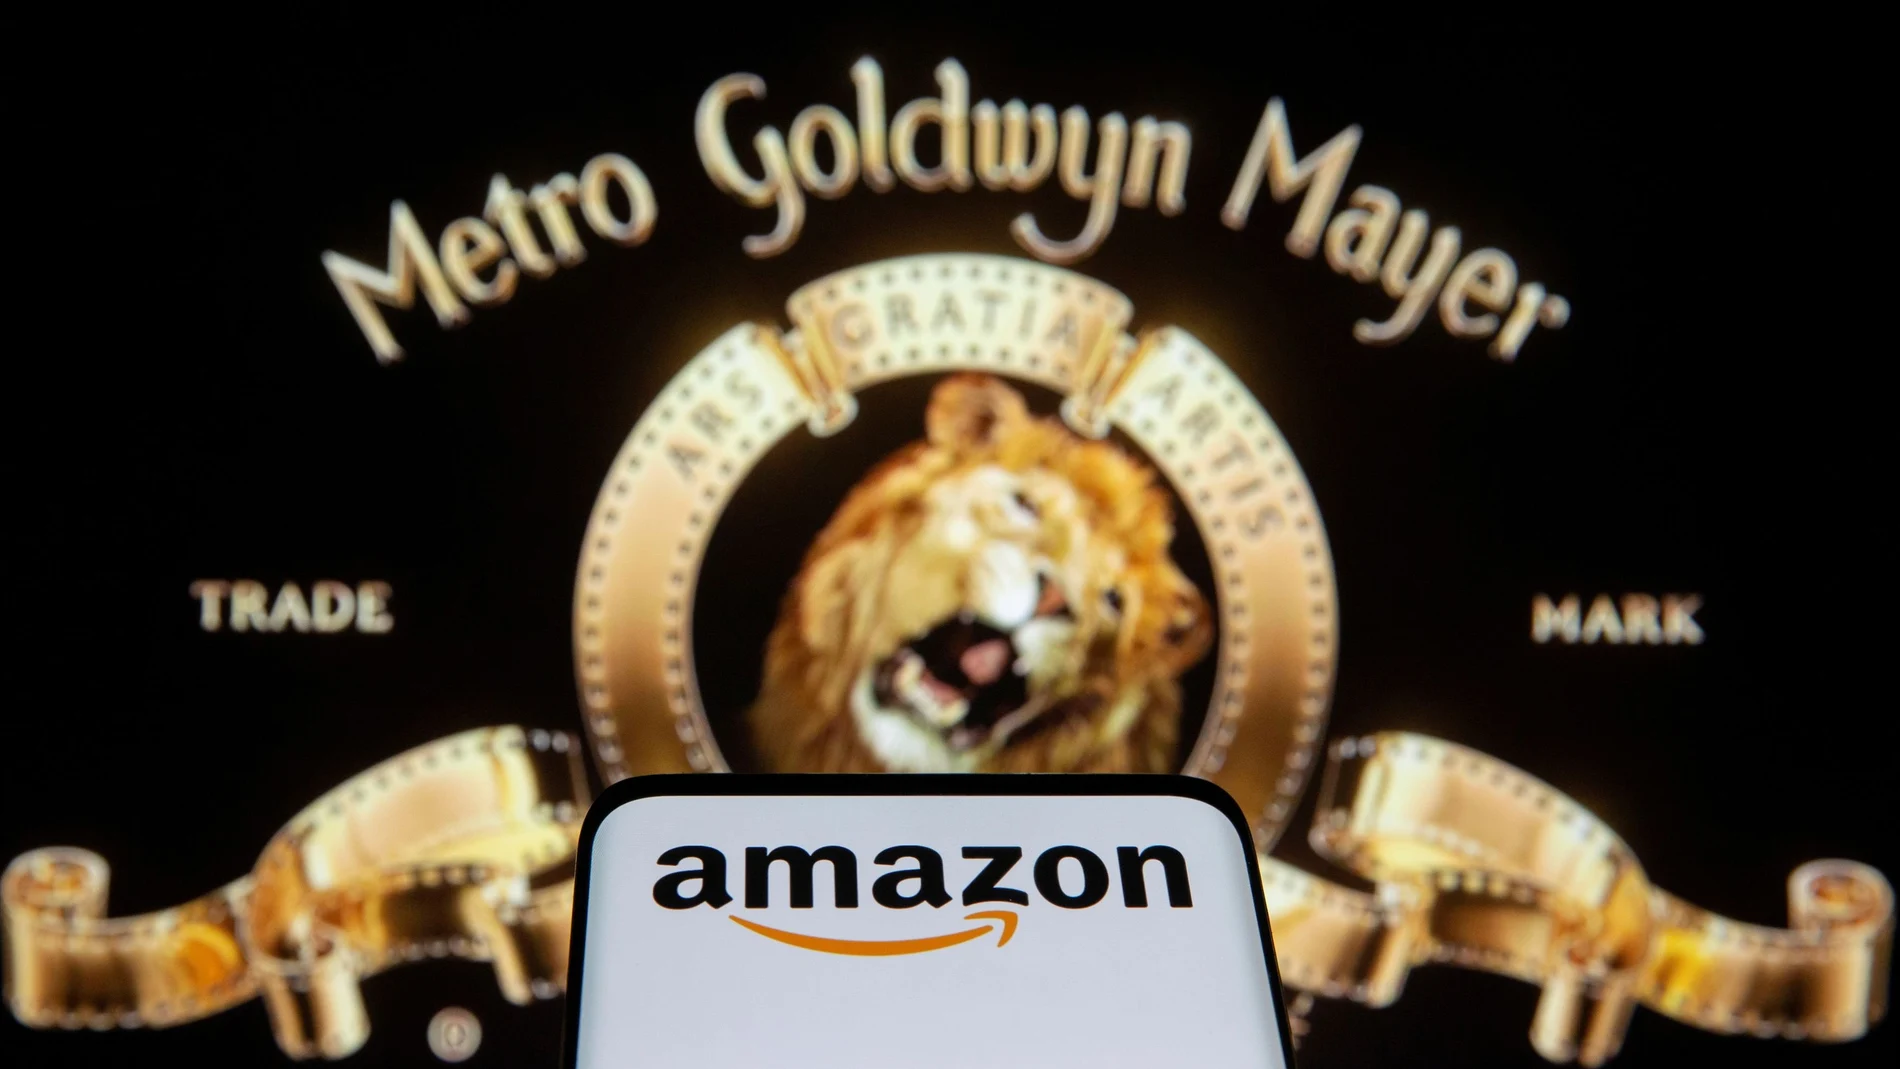 La cabecera con el león de MGM, diseñada por Howard Dietz, será propiedad de Amazon. REUTERS/Dado Ruvic/Illustration/File Photo